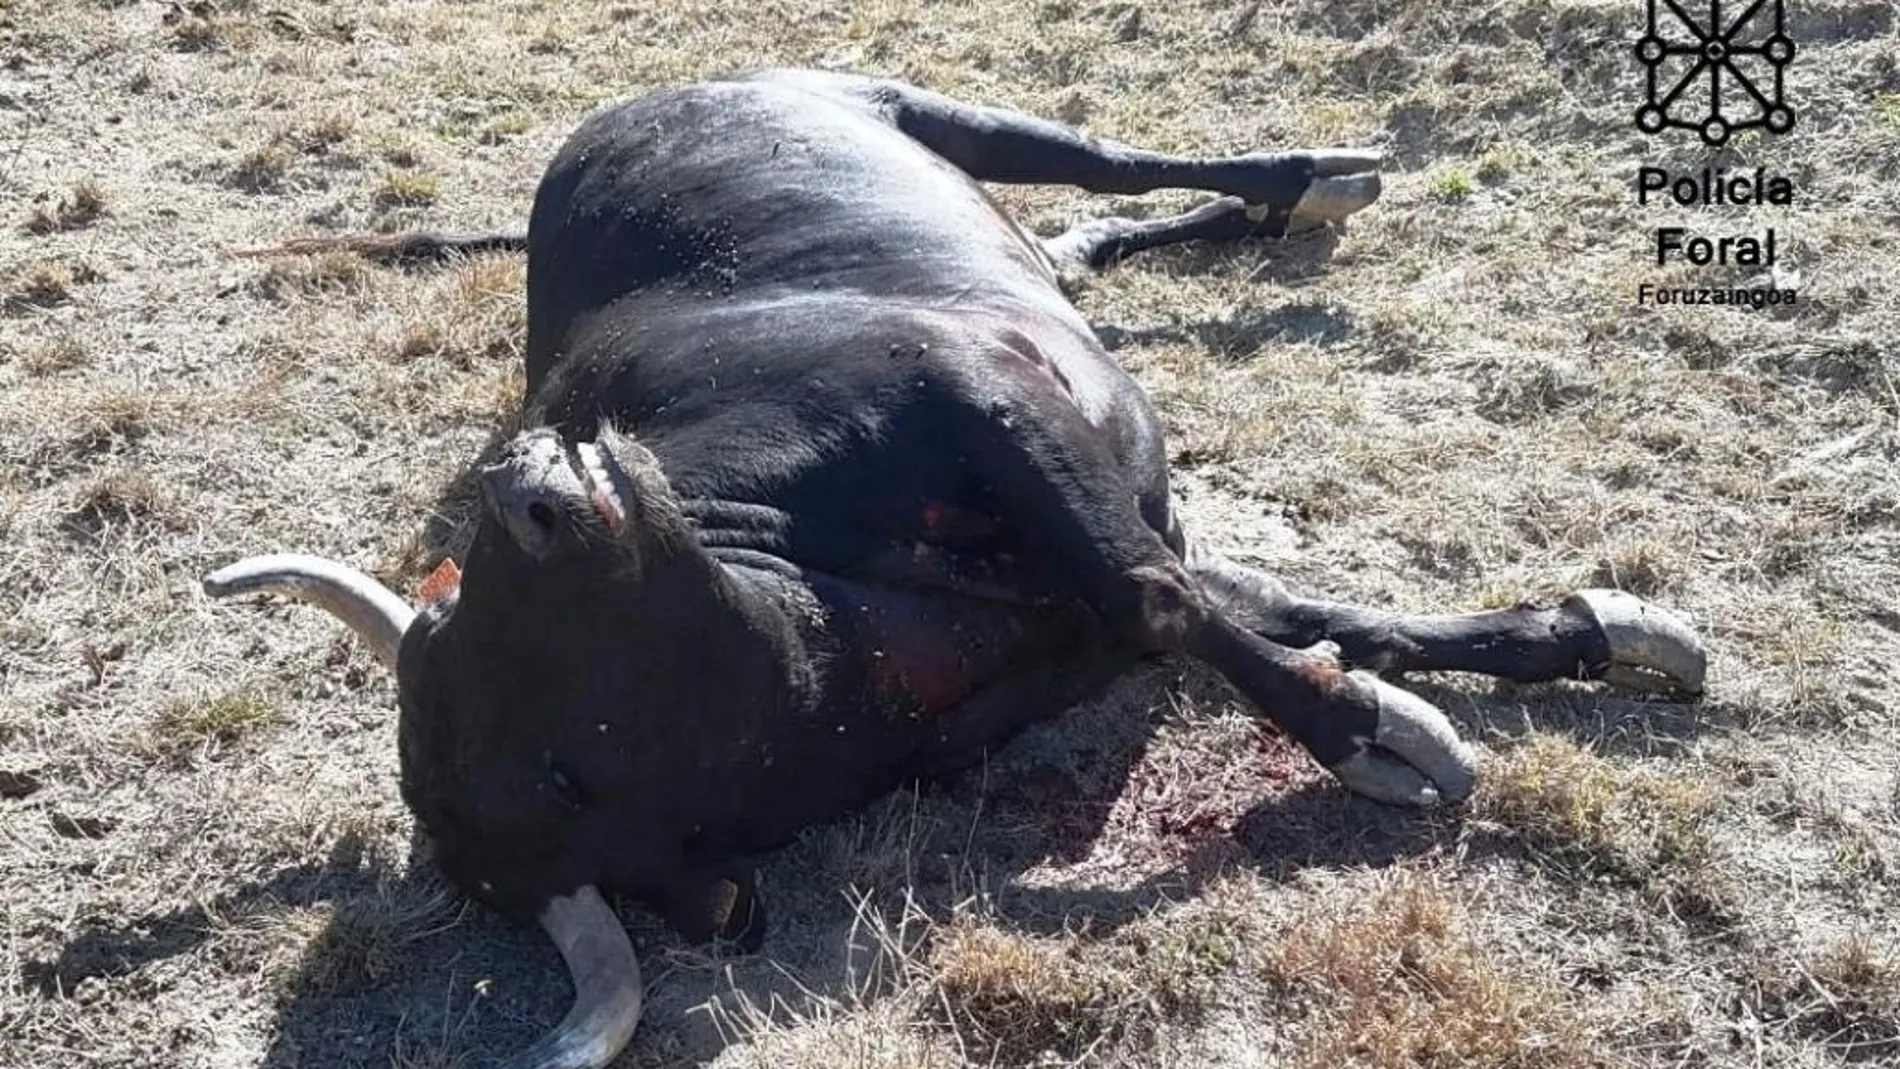 La policía abate a un toro que hiere a una persona al escaparse de una granja